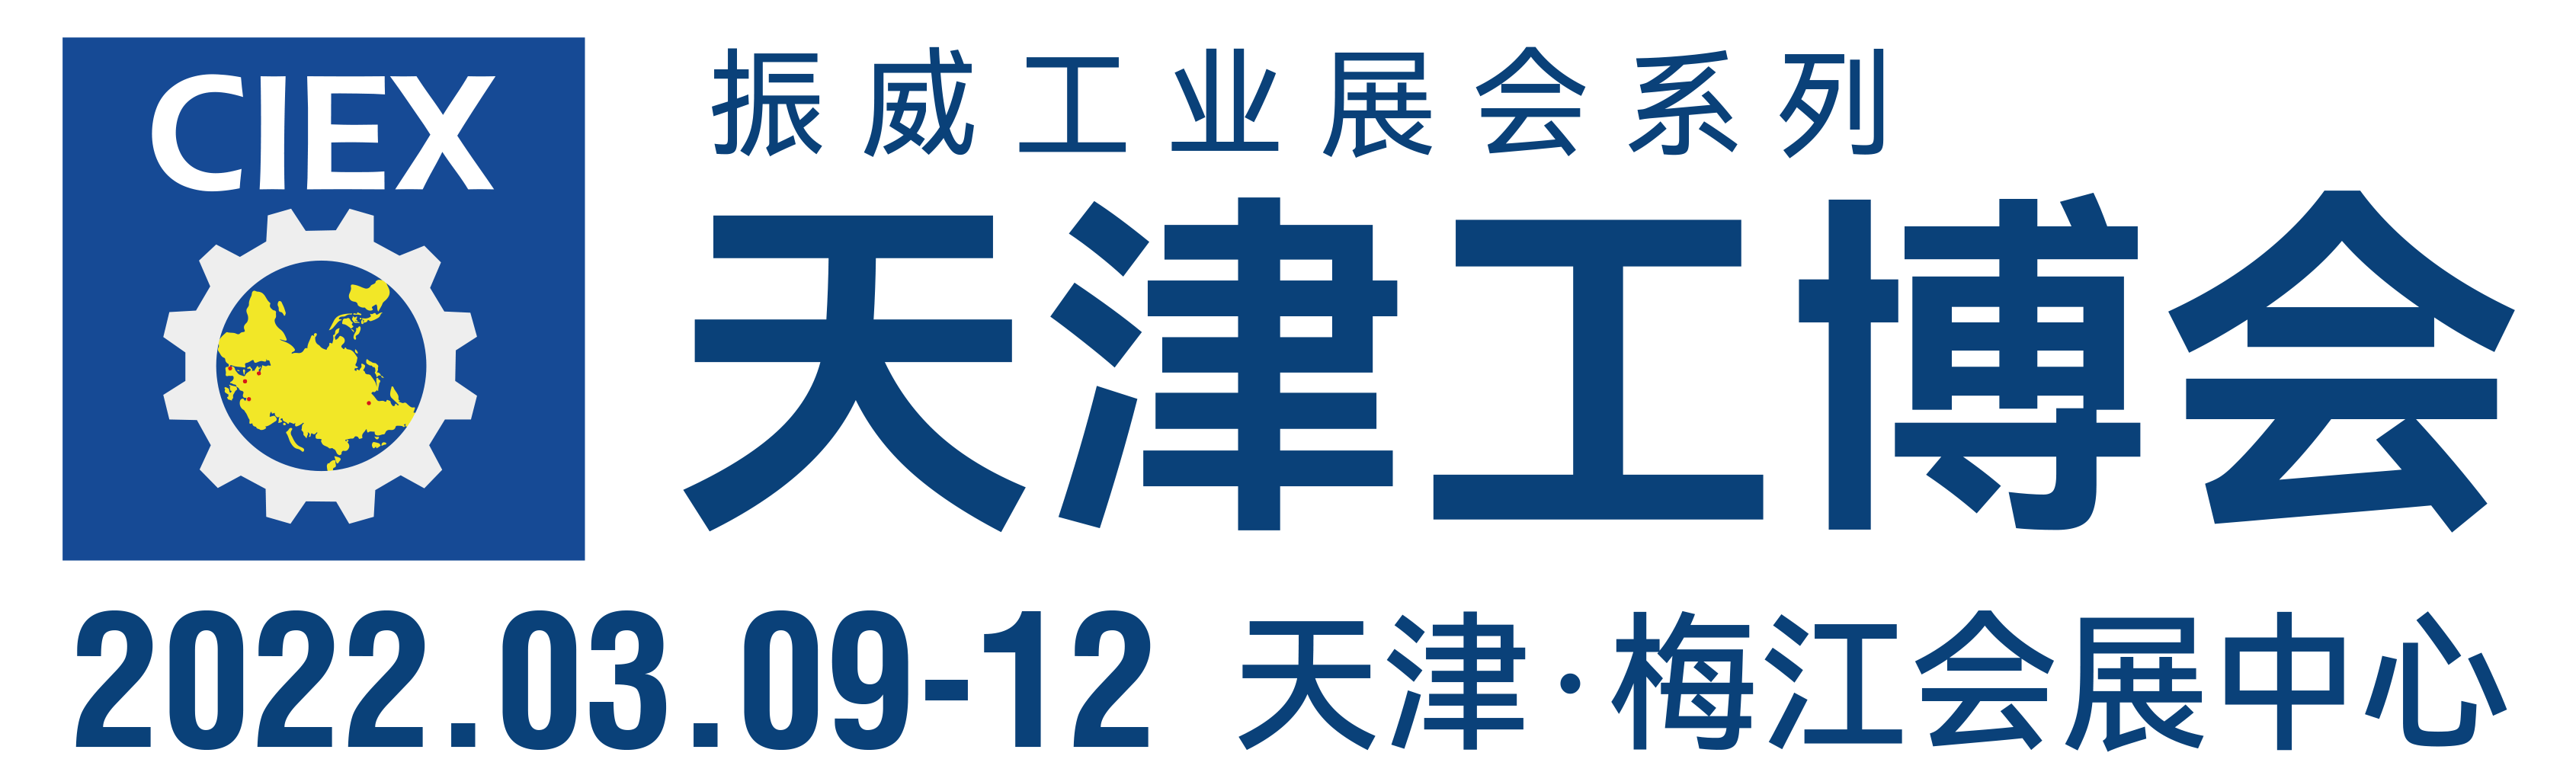 第18届天津工博会